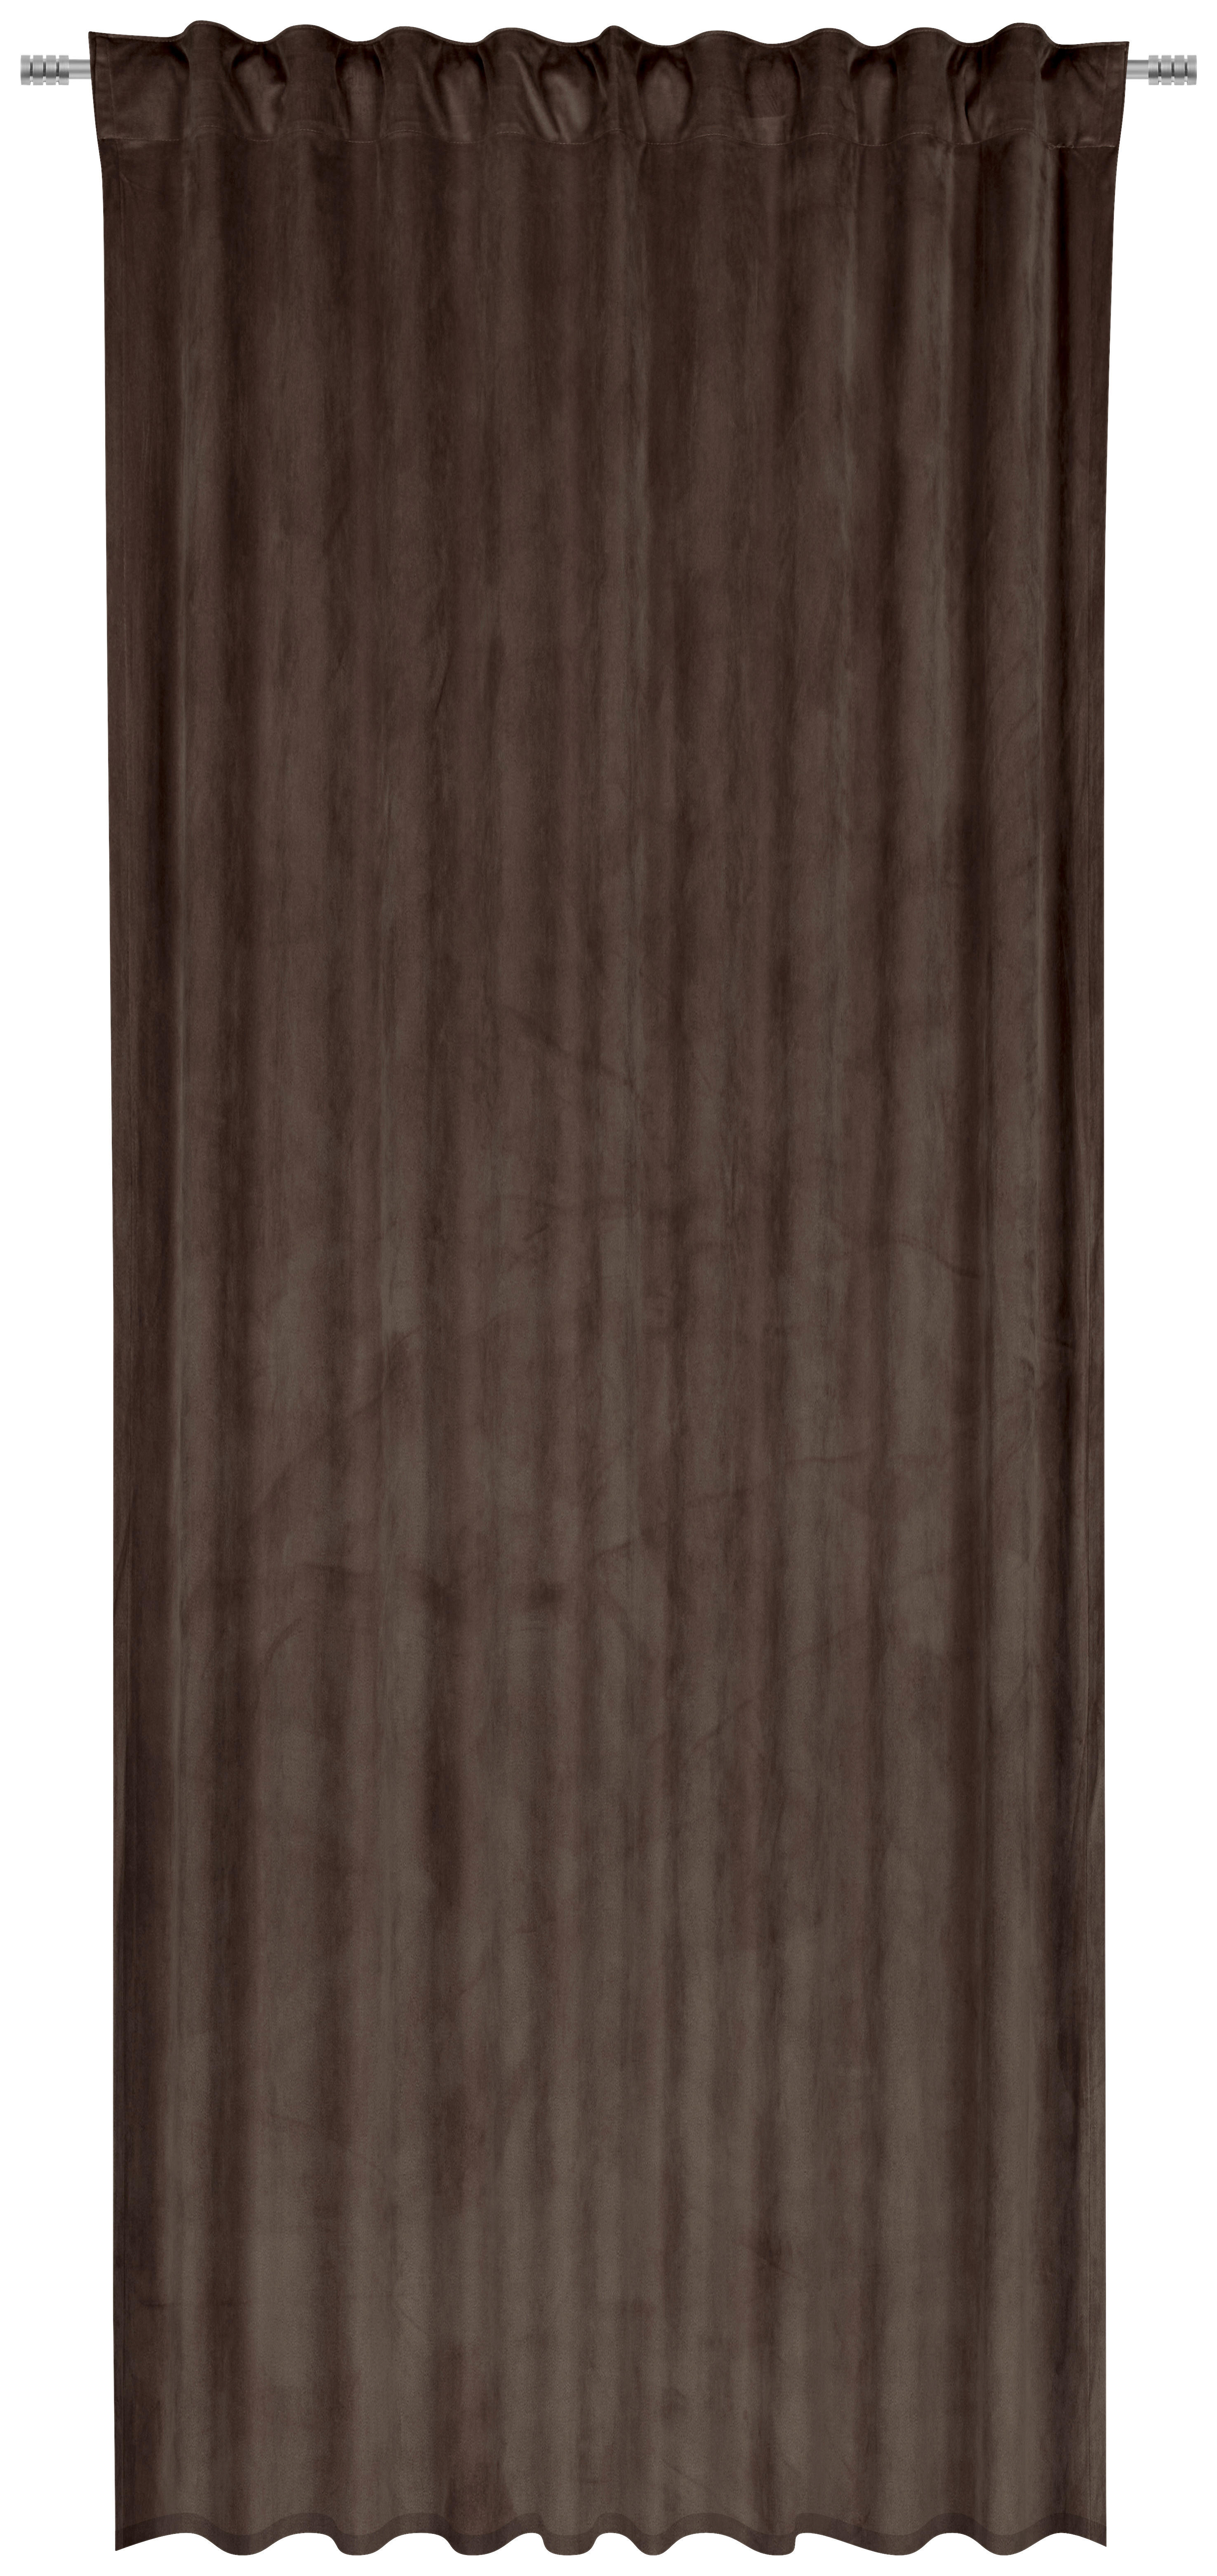 FERTIGVORHANG ZENATO blickdicht 135/245 cm   - Dunkelbraun, KONVENTIONELL, Textil (135/245cm) - Ambiente